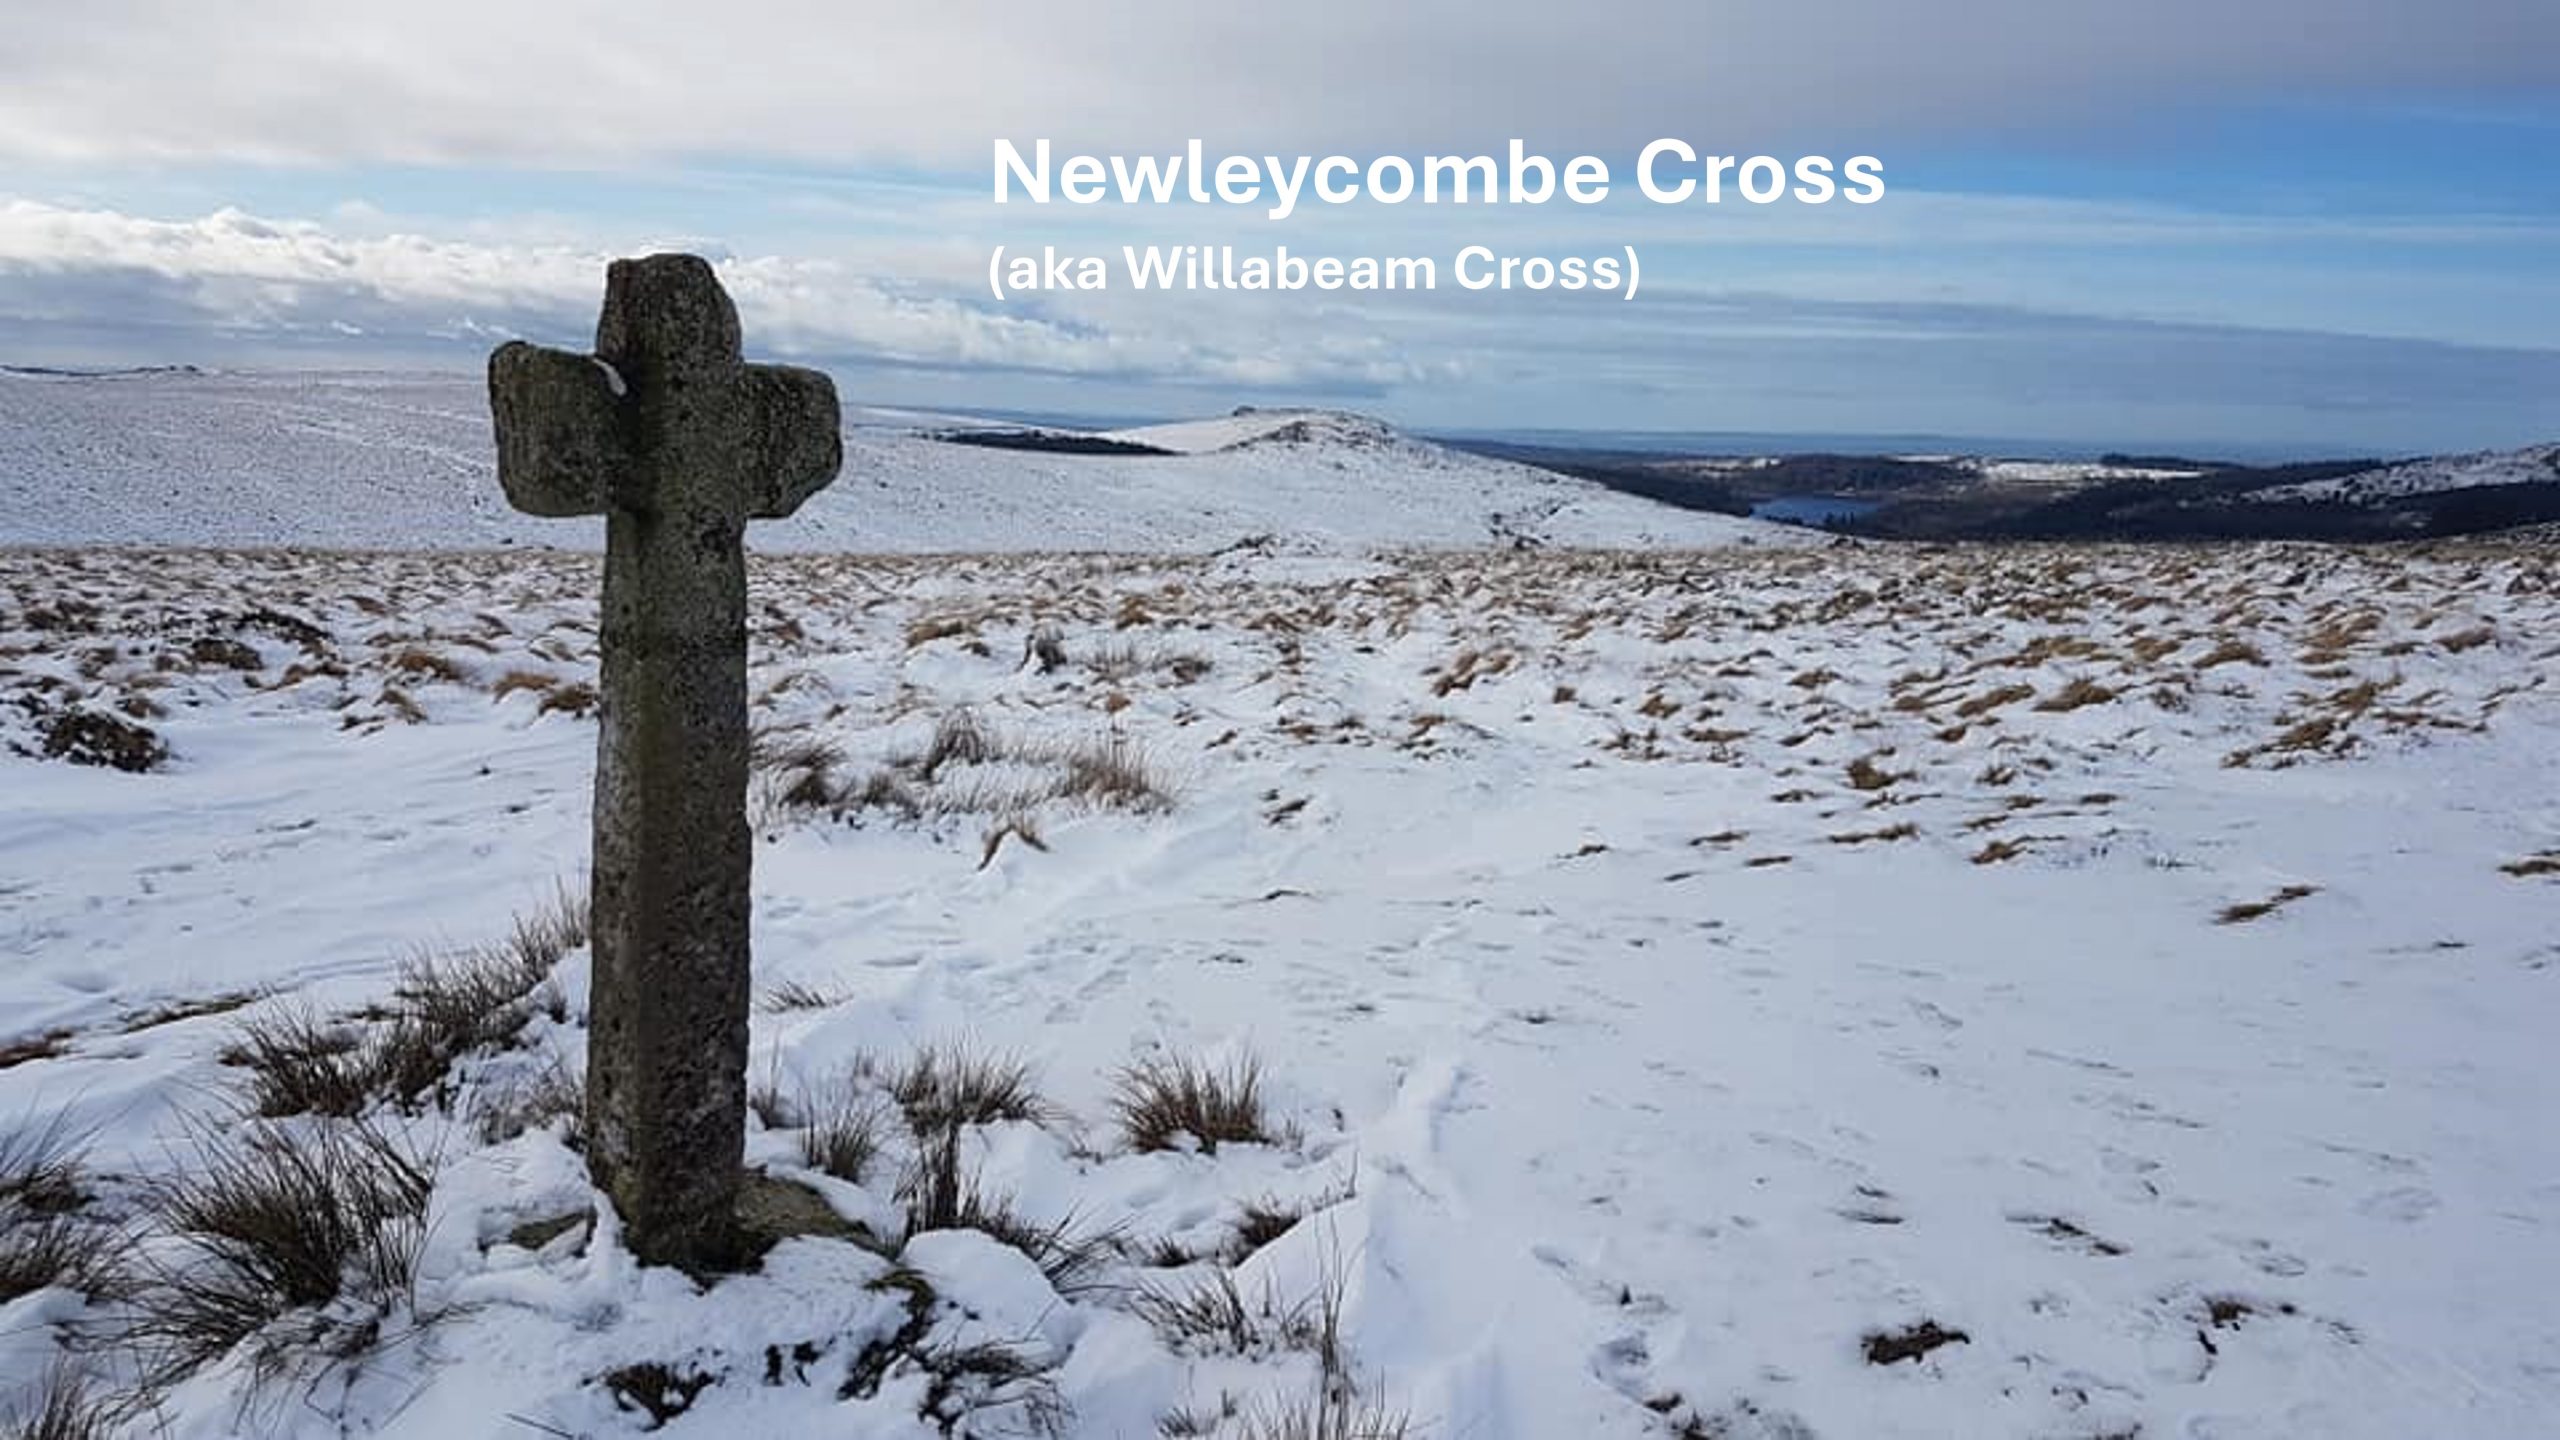 15. Newleycombe Cross